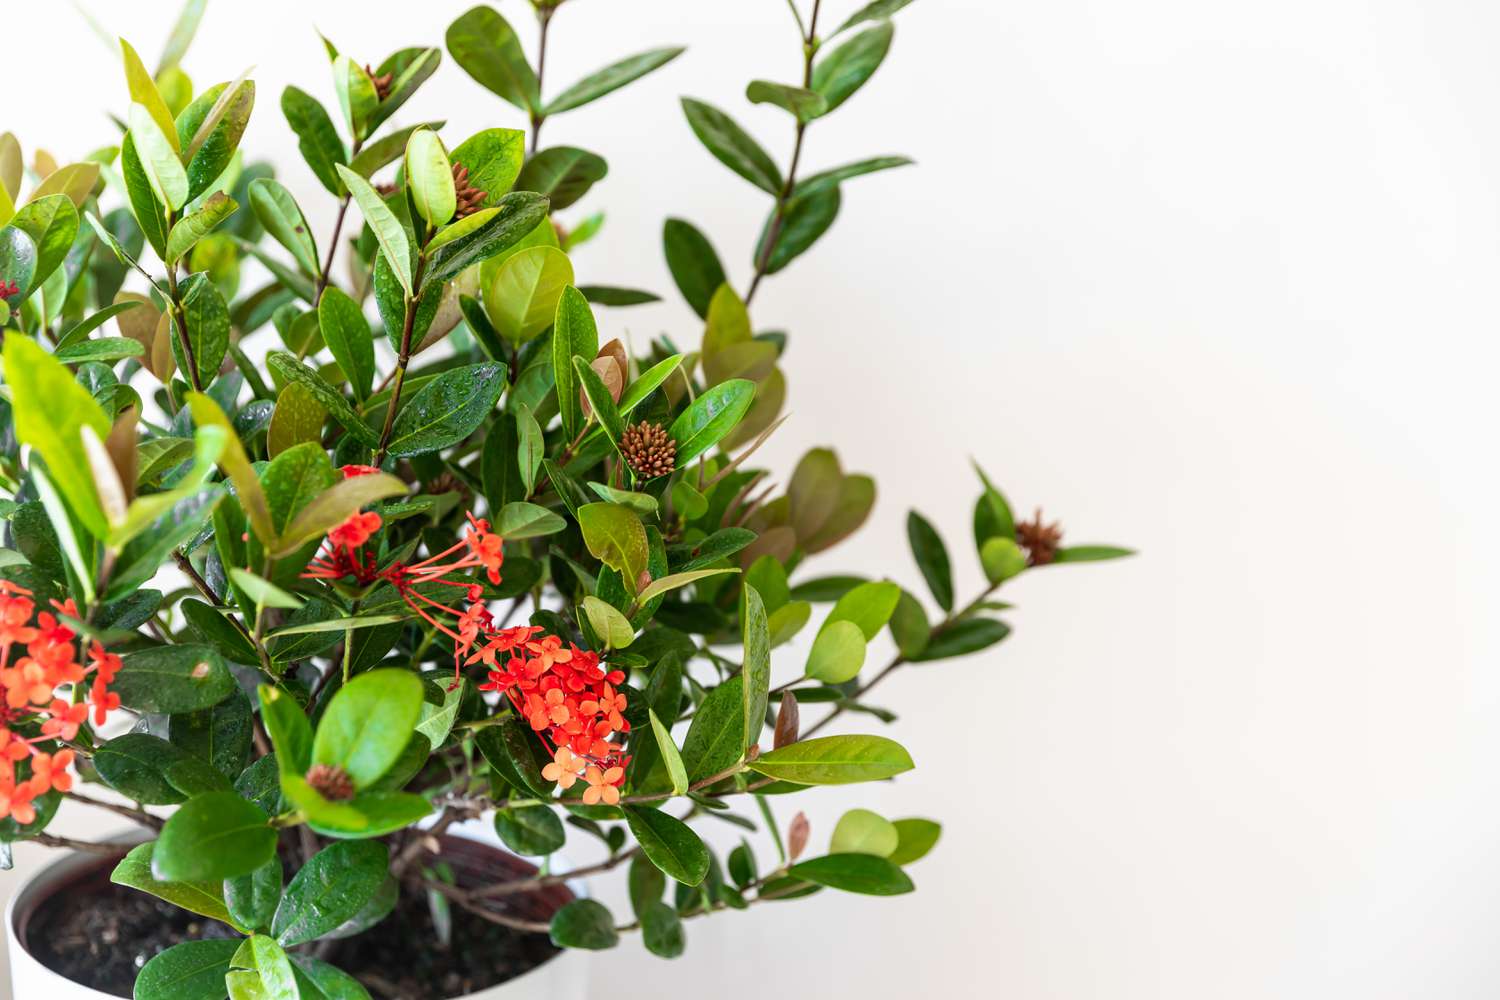 Ixora-Pflanze mit roten Blüten und grünen Blättern im Topf in Nahaufnahme